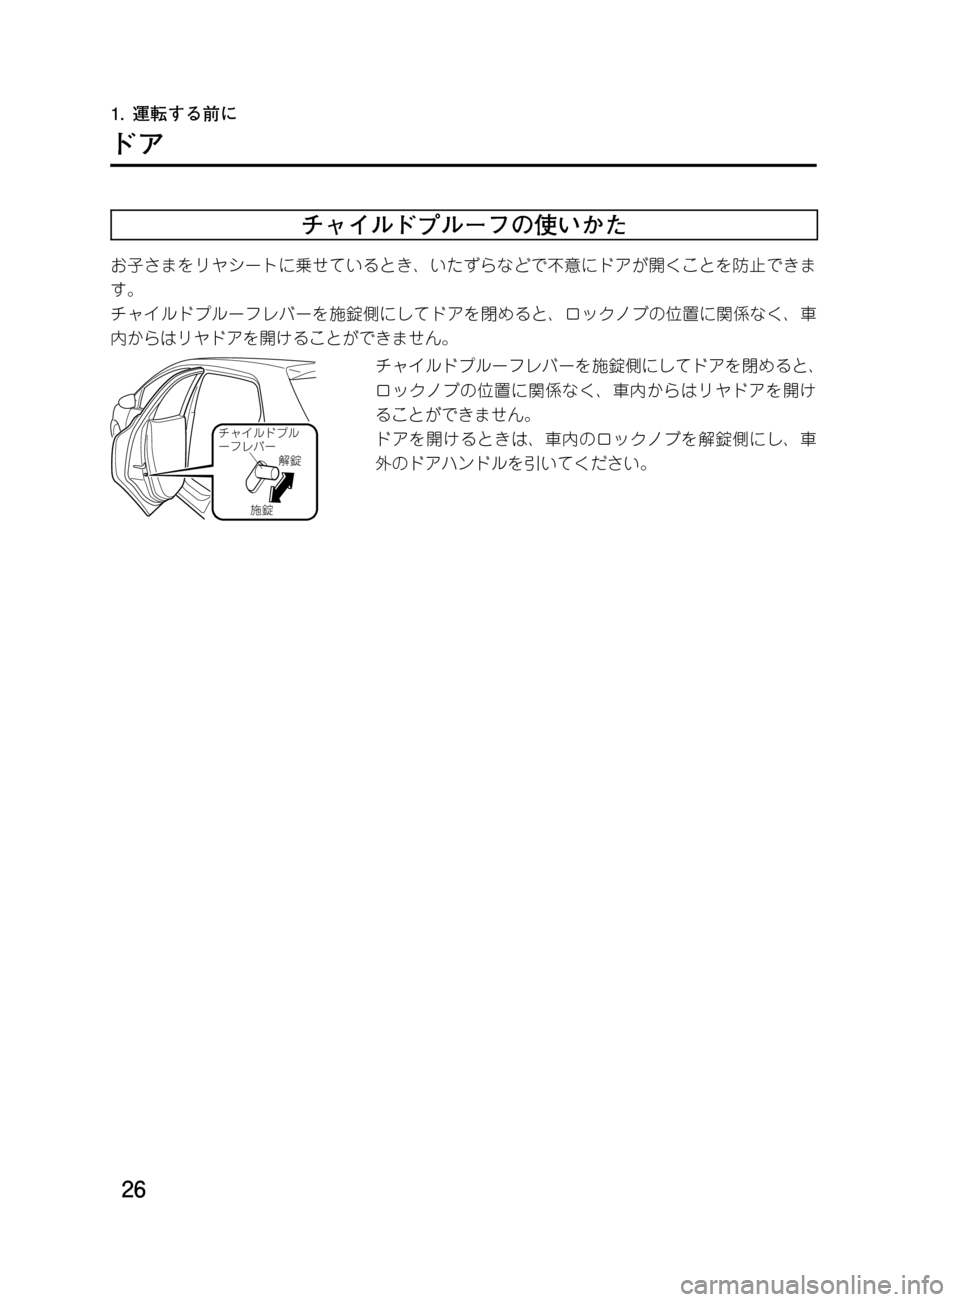 MAZDA MODEL DEMIO 2011  デミオ｜取扱説明書 (in Japanese) ��
��P�S�N��/�P���% 